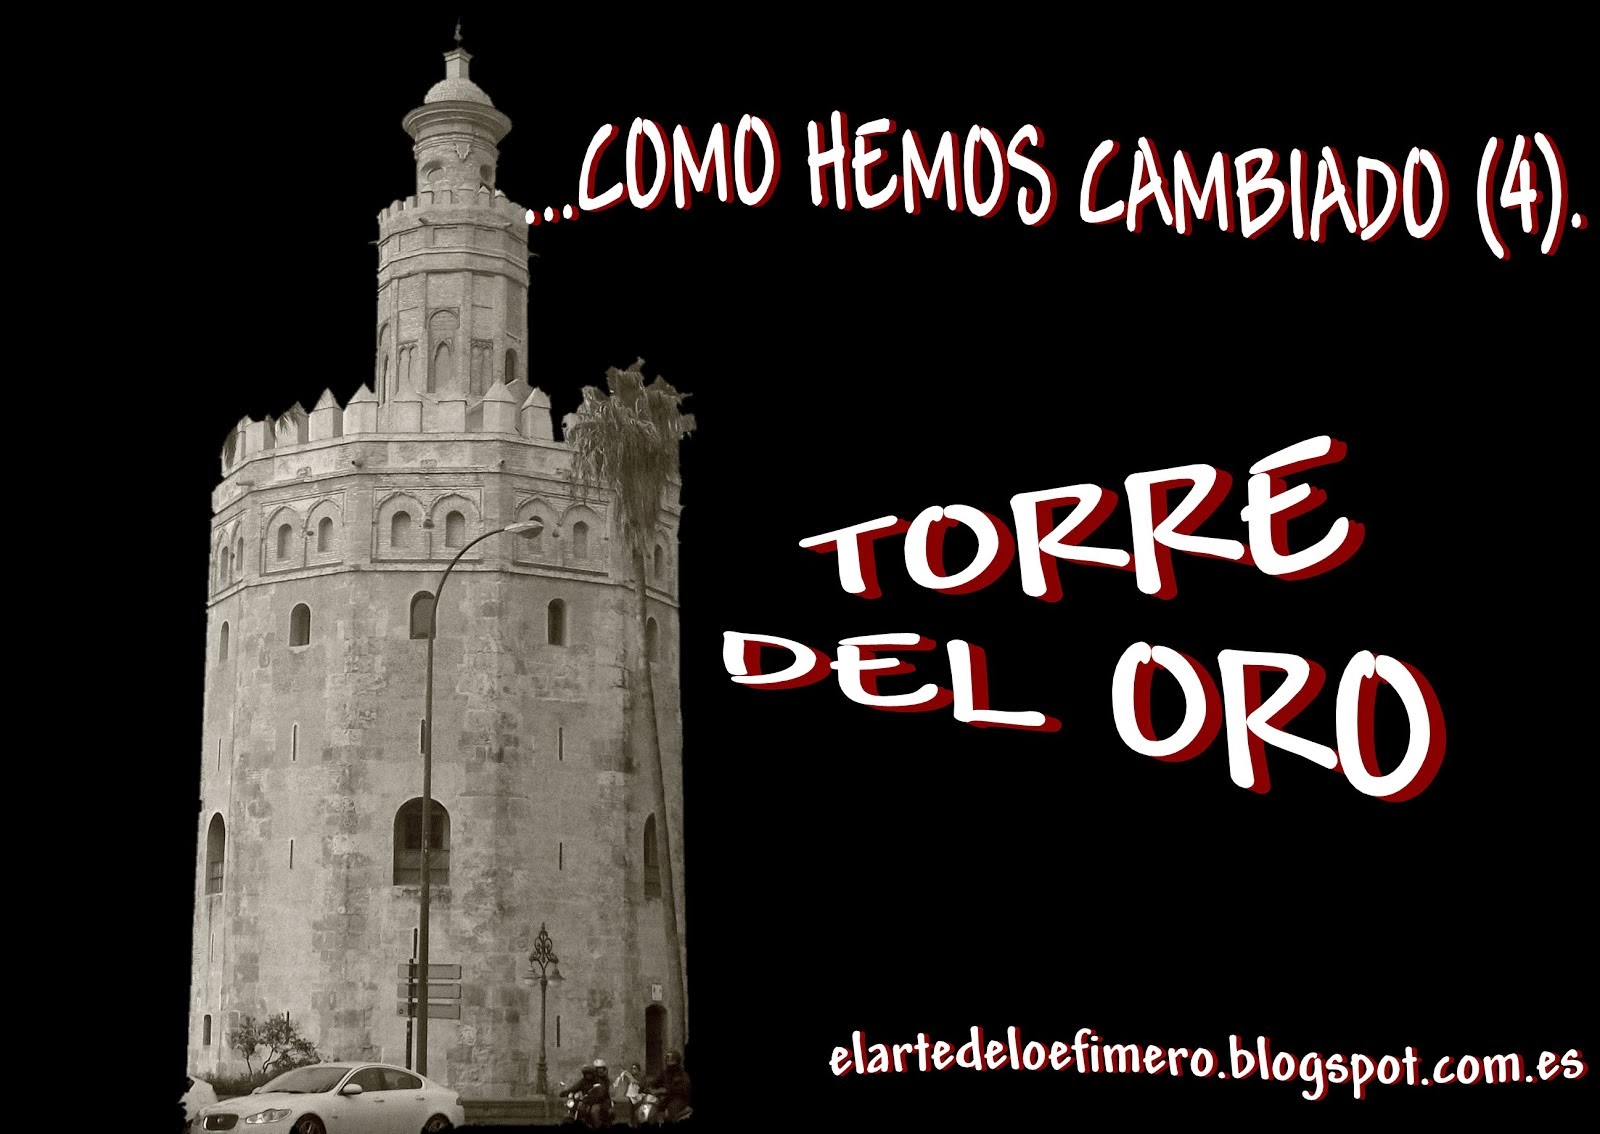 COMO HEMOS CAMBIADO (4). TORRE DEL ORO